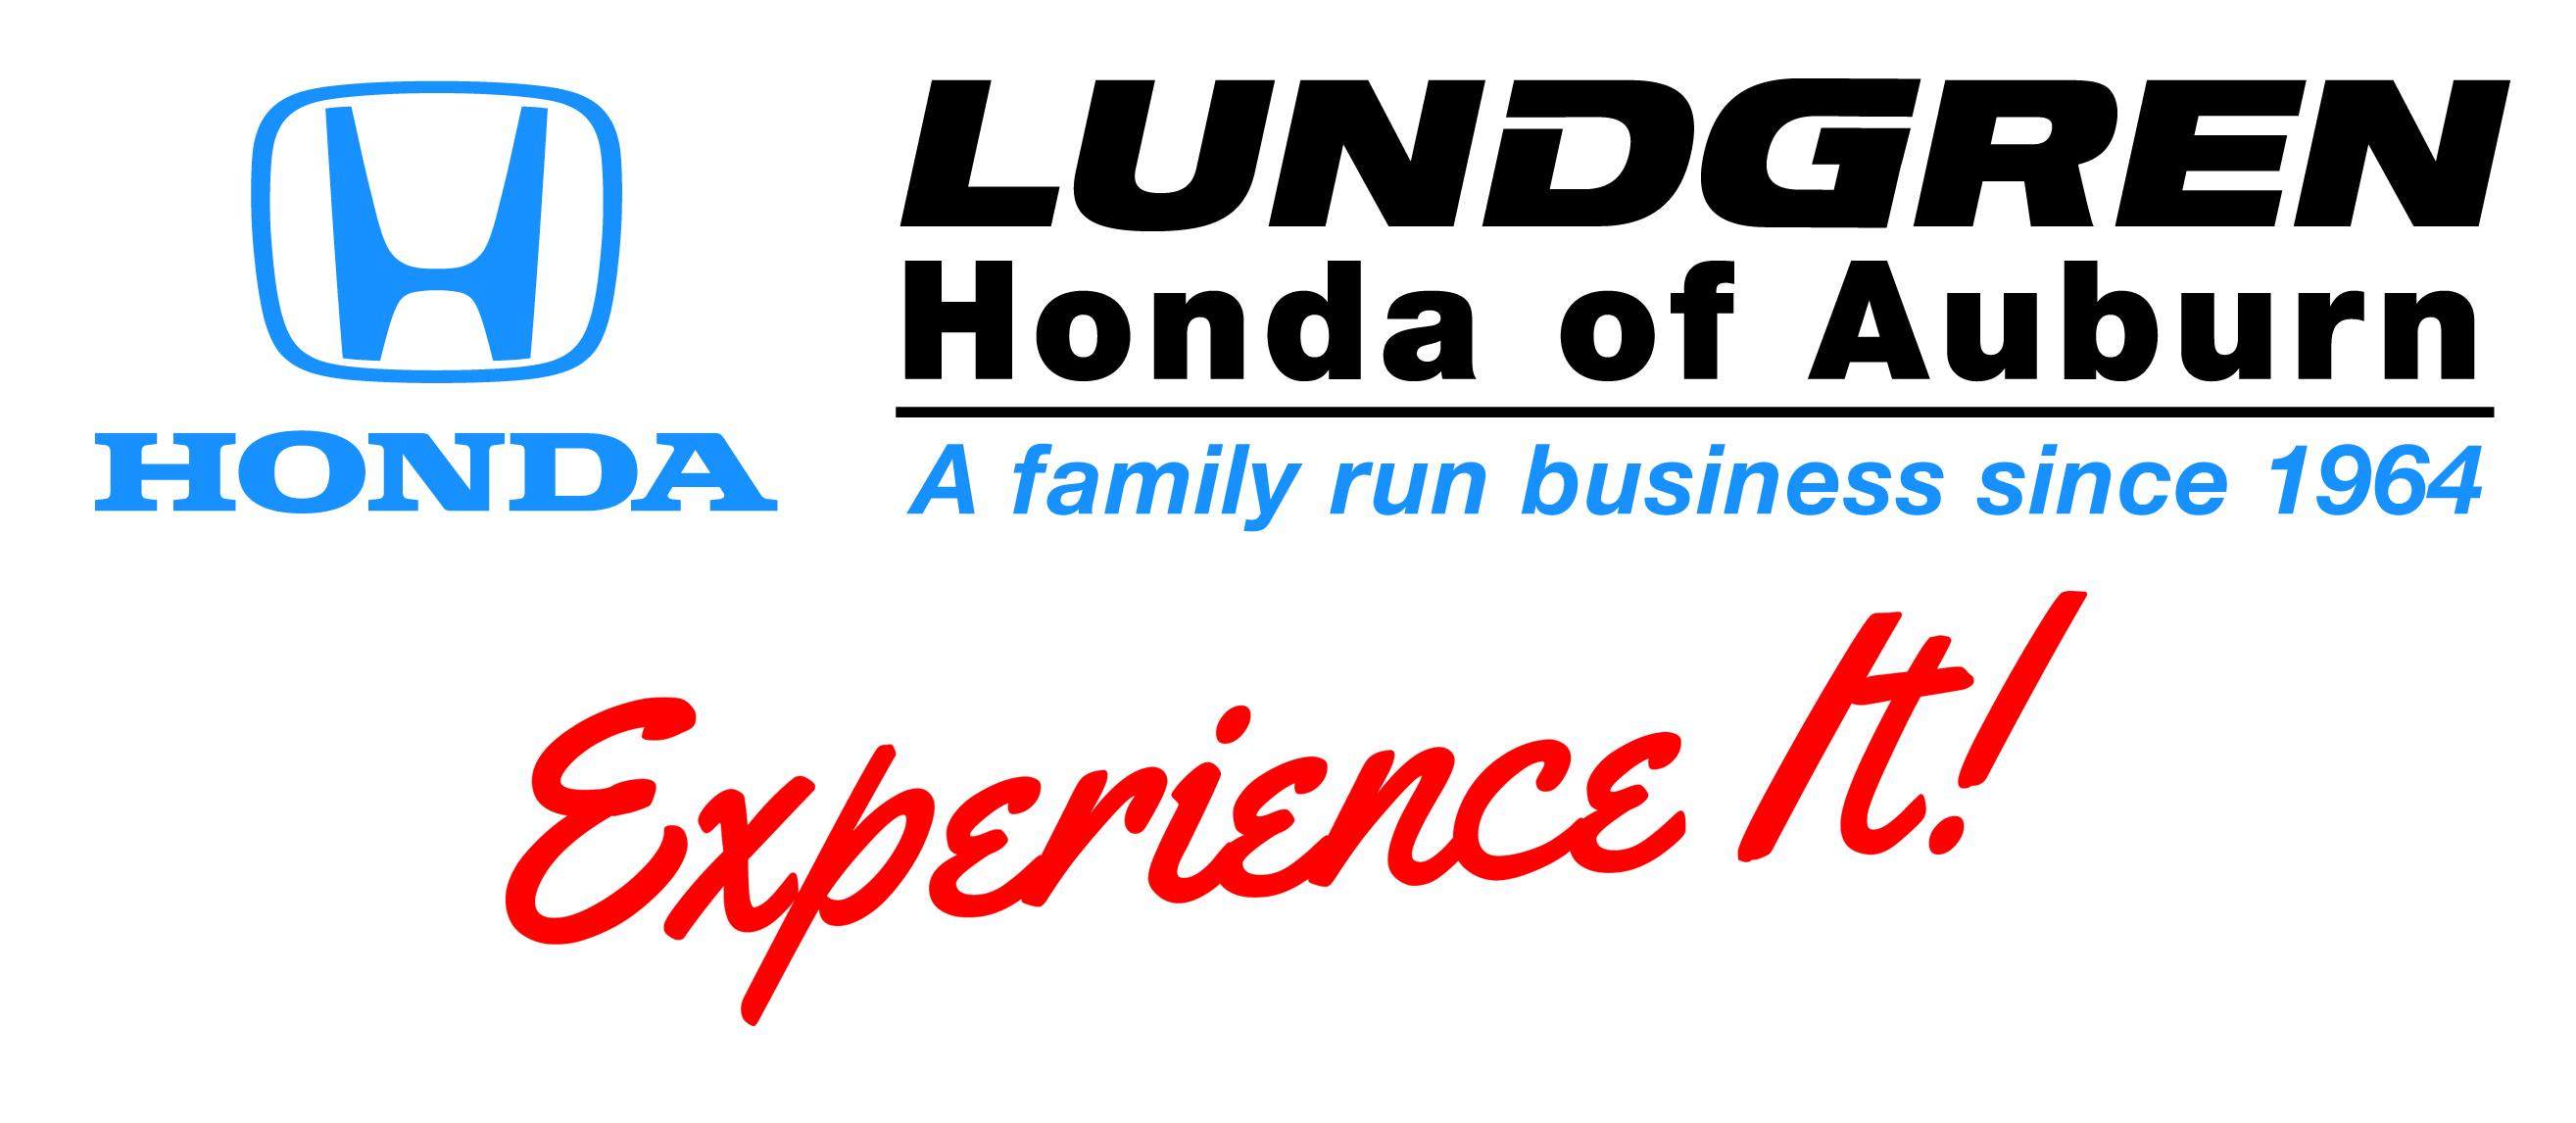 Sponsor Lundgren Honda